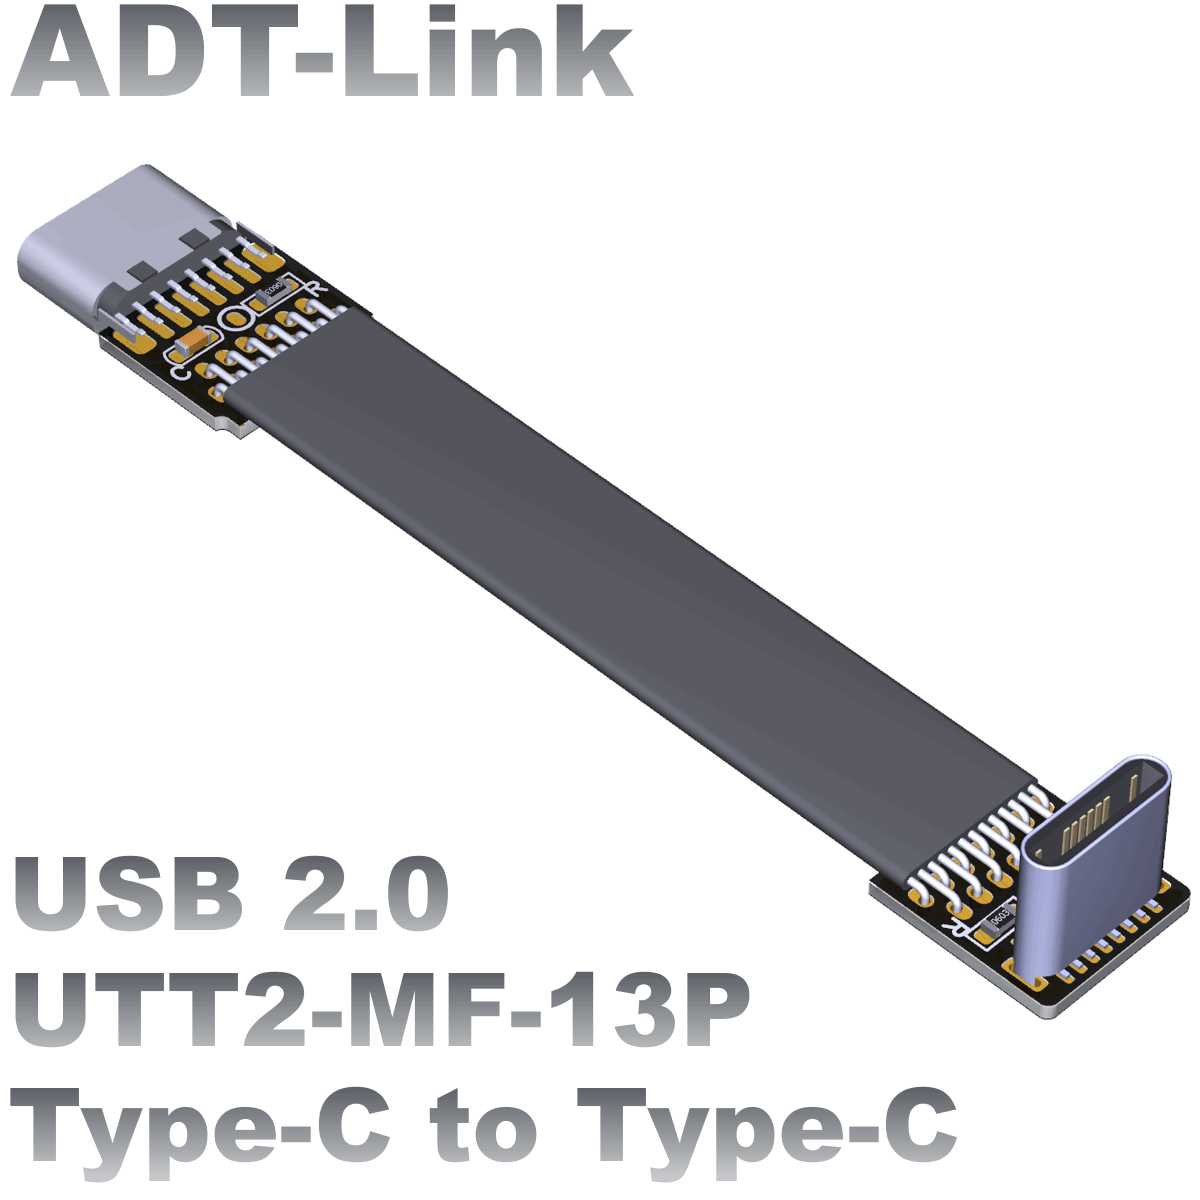 UTT2-MF-13P (Shop)